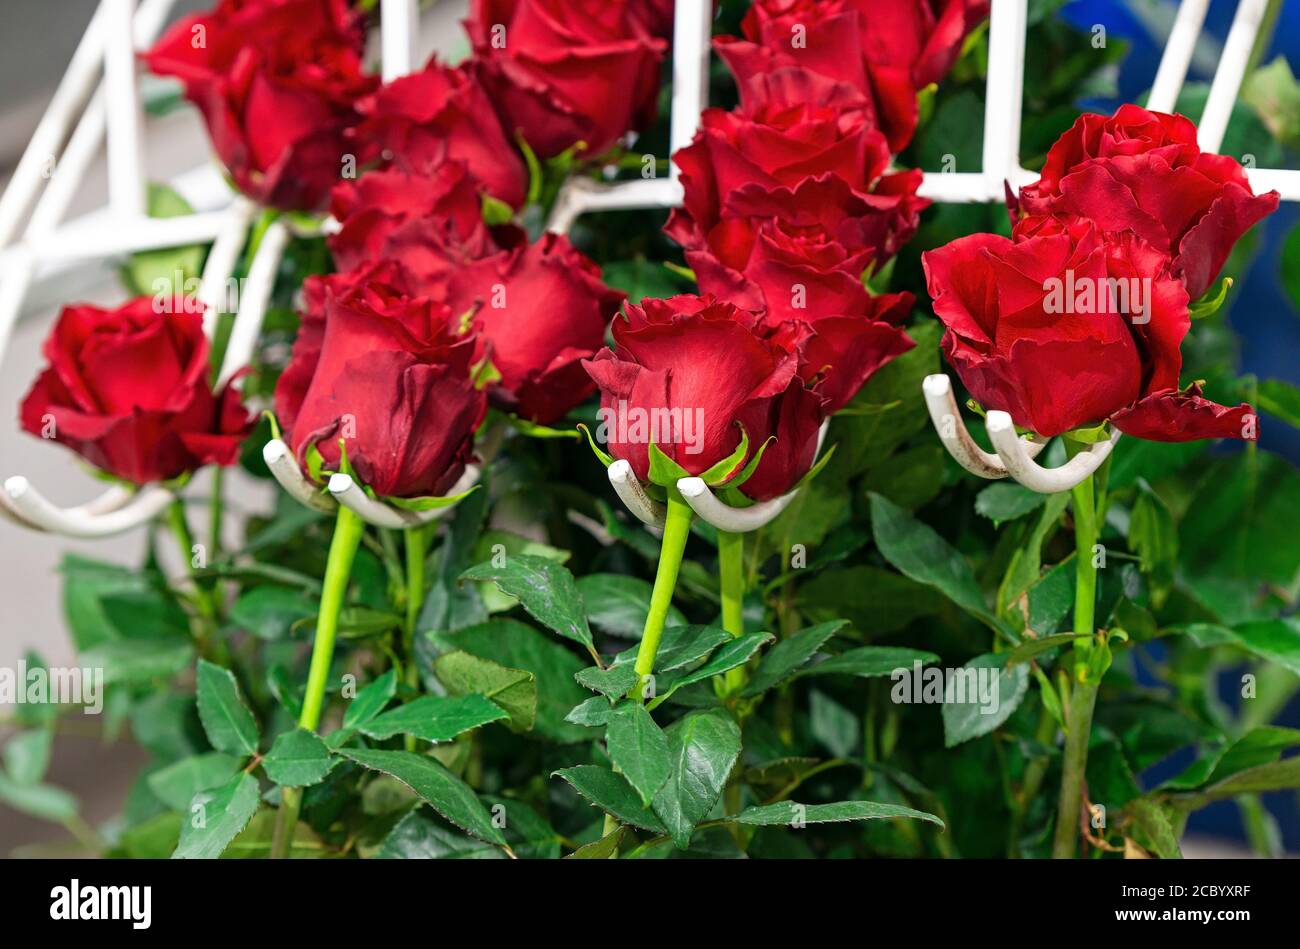 Le rose rosse, il fiore nazionale ecuadoriano, nella linea di produzione per la classificazione delle dimensioni, Cayambe, a nord di Quito, Ecuador. Foto Stock